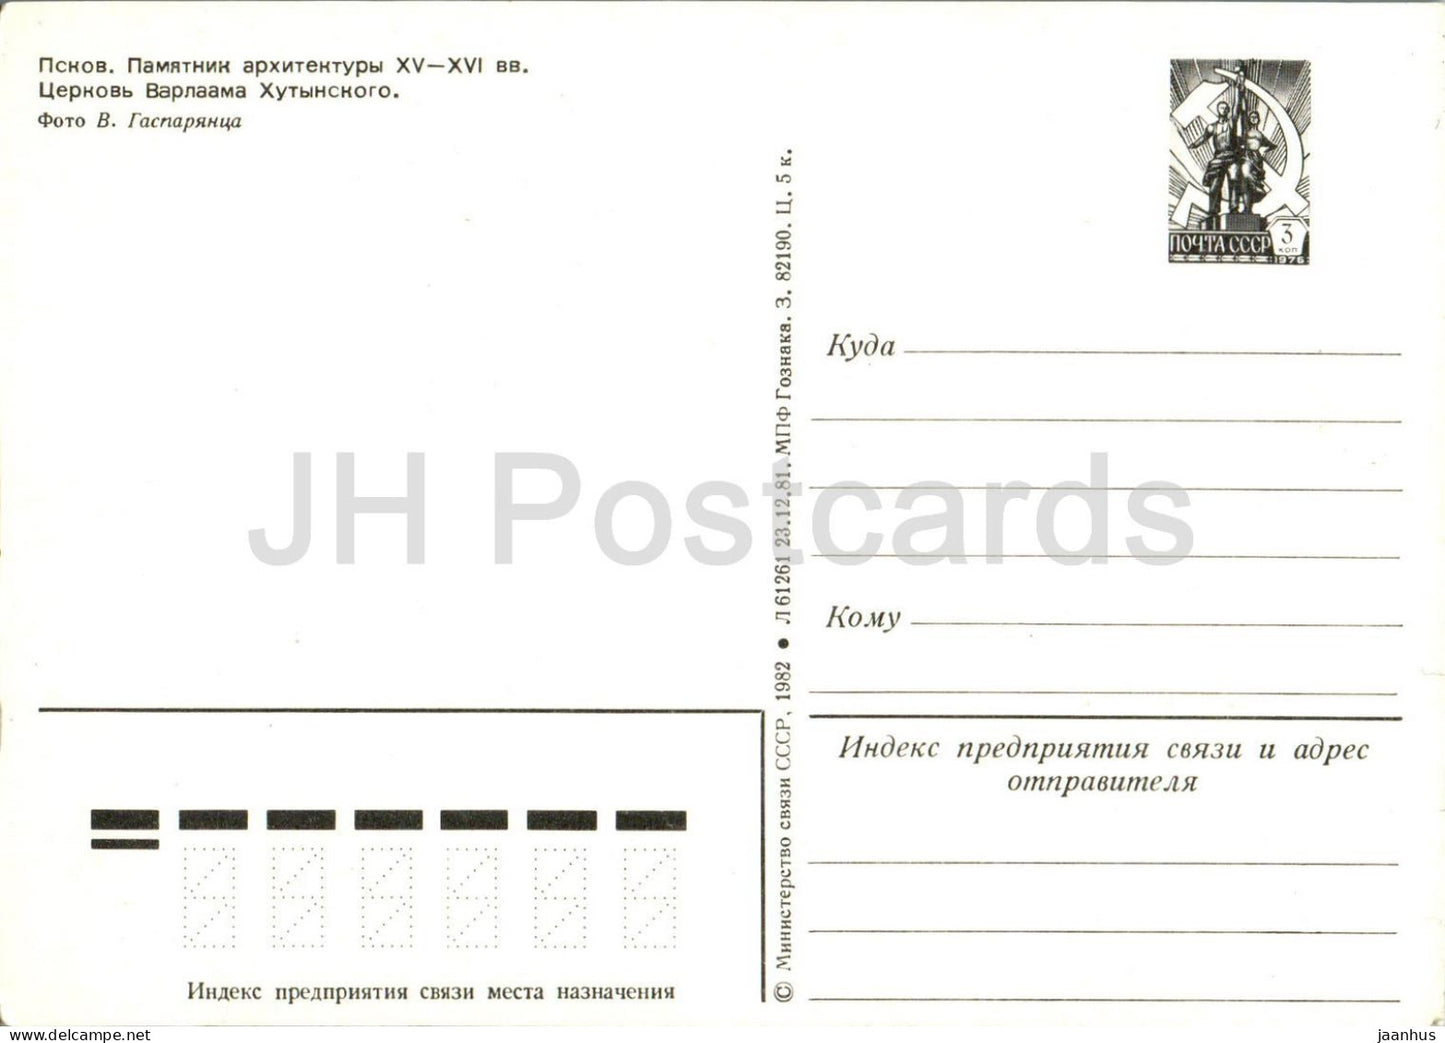 Pskov - Église de Varlaam sur Zvanitse - entier postal - 1982 - Russie URSS - inutilisé 